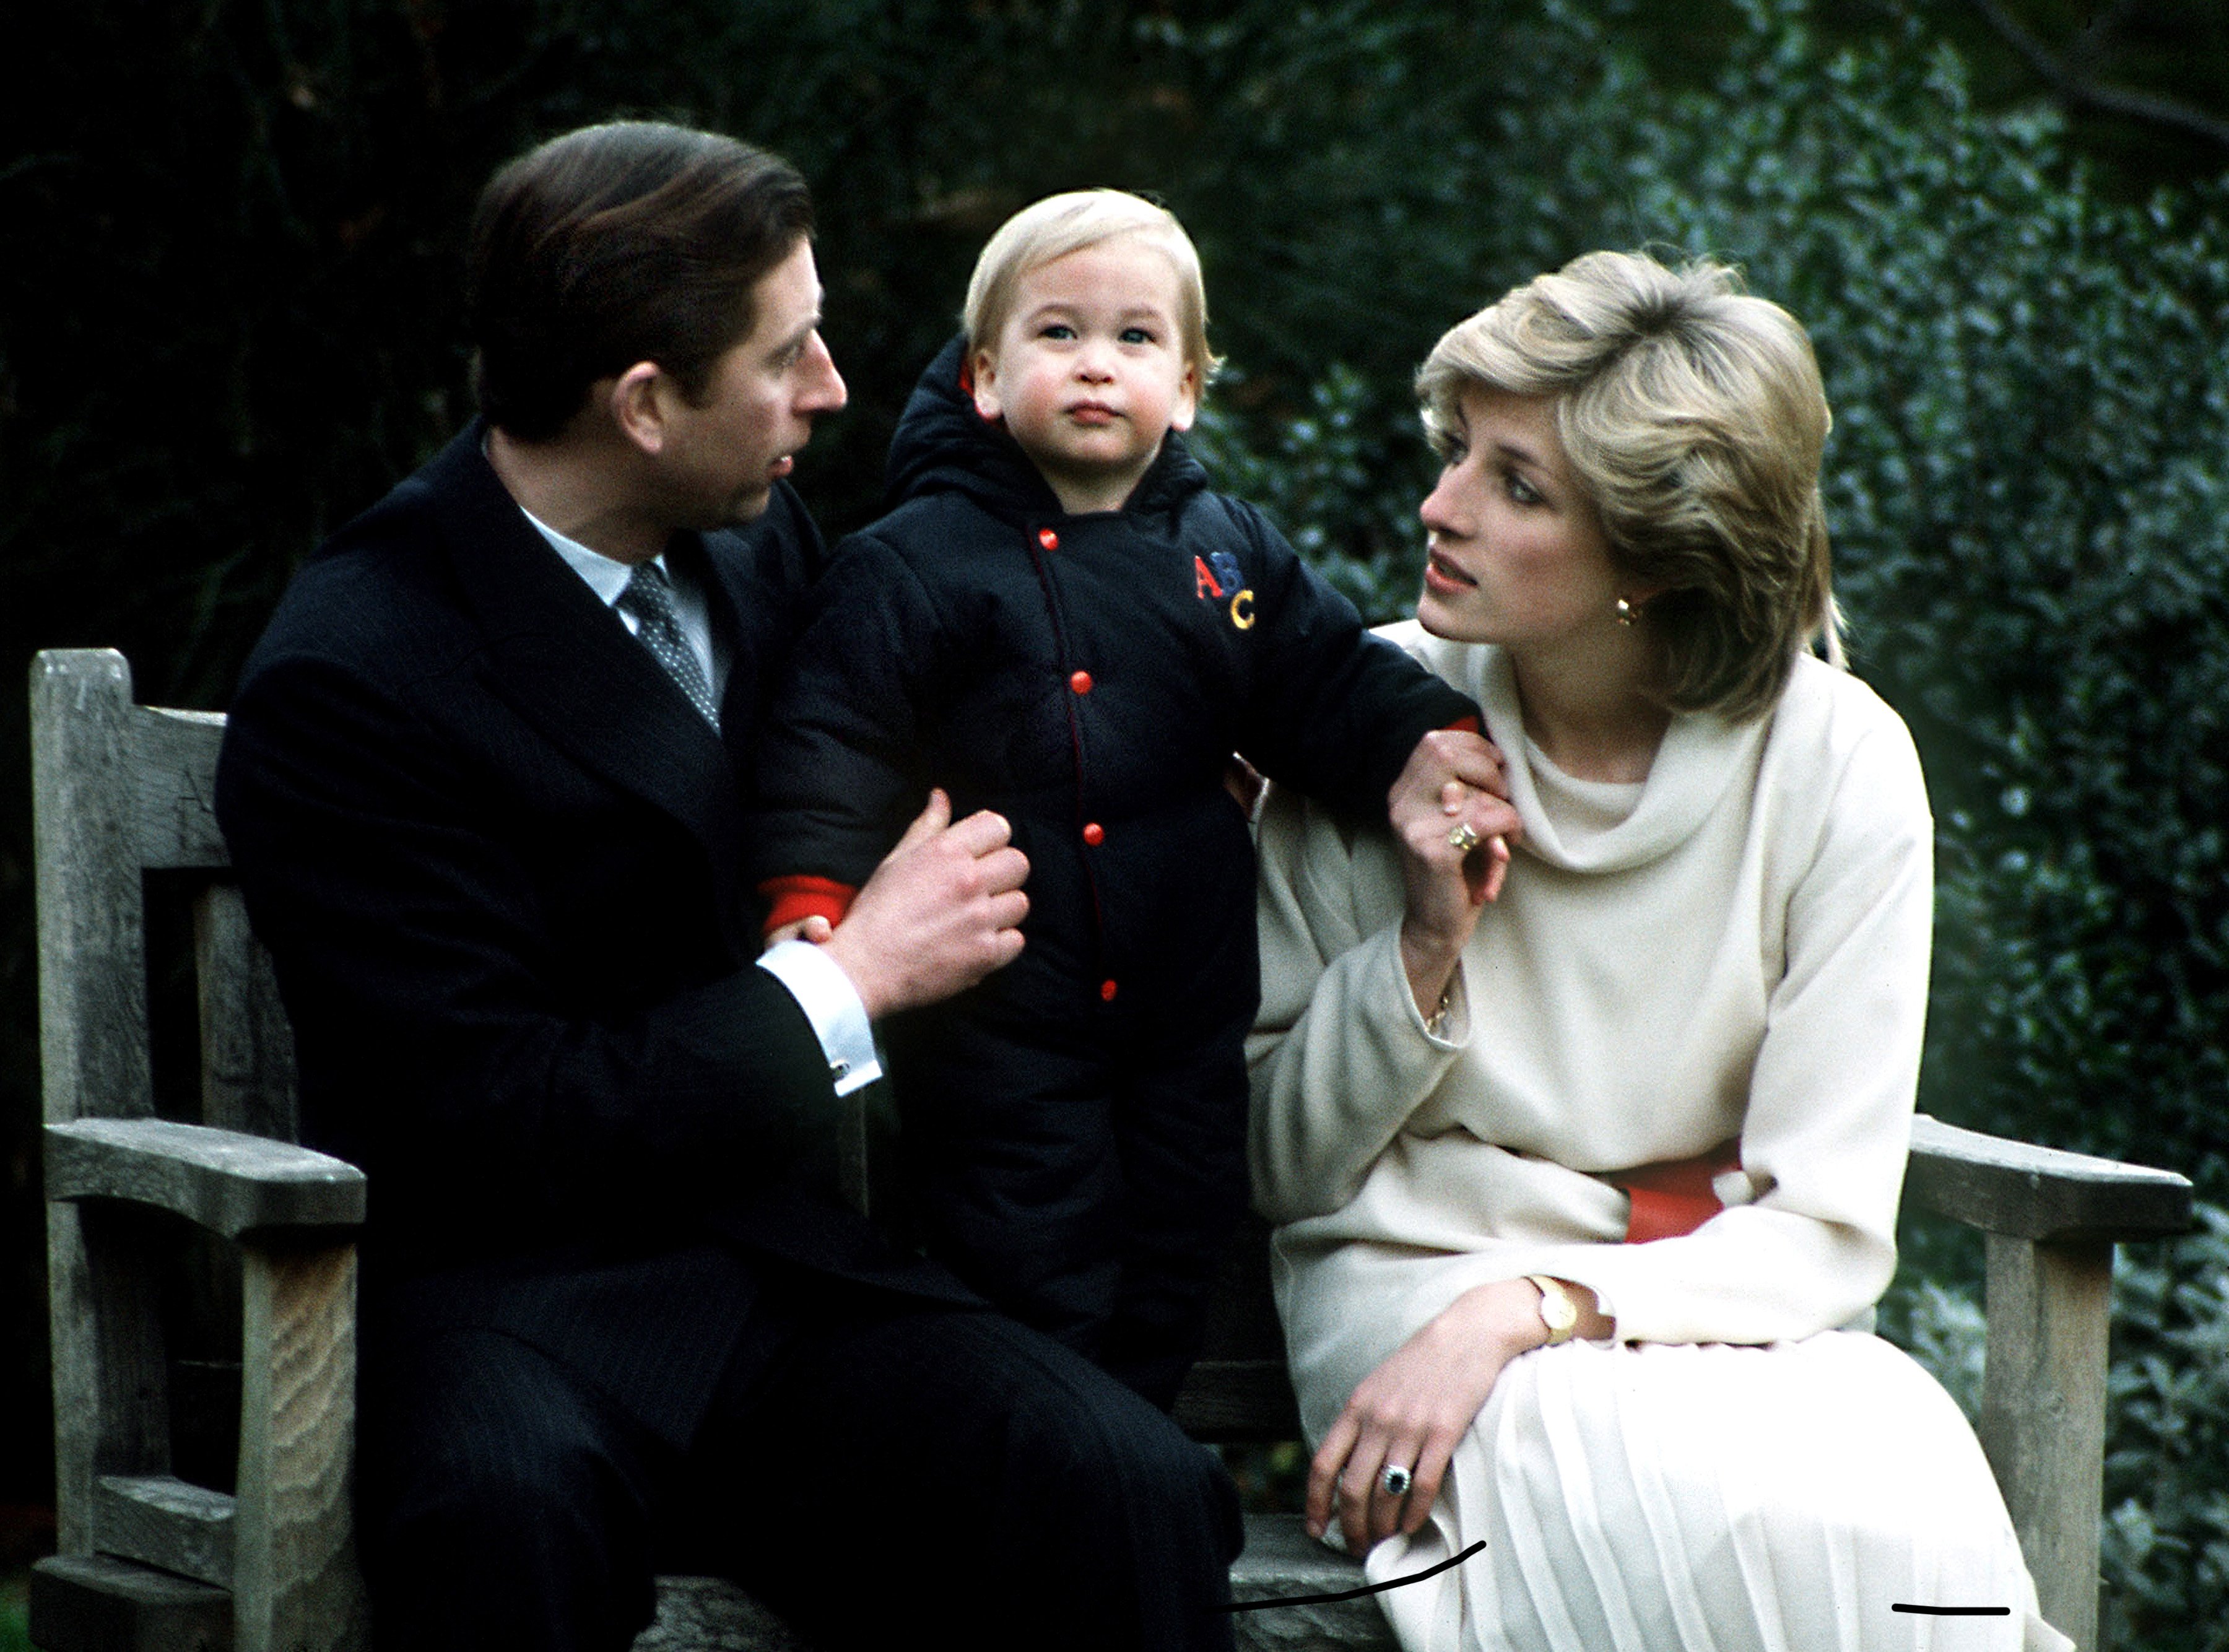 Le prince Charles et la princesse Diana avec leur fils, le prince William, lors de sa première séance de photos officielle dans le jardin, le 14 décembre 1983, au palais de Kensington, à Londres. / Source : Getty Images